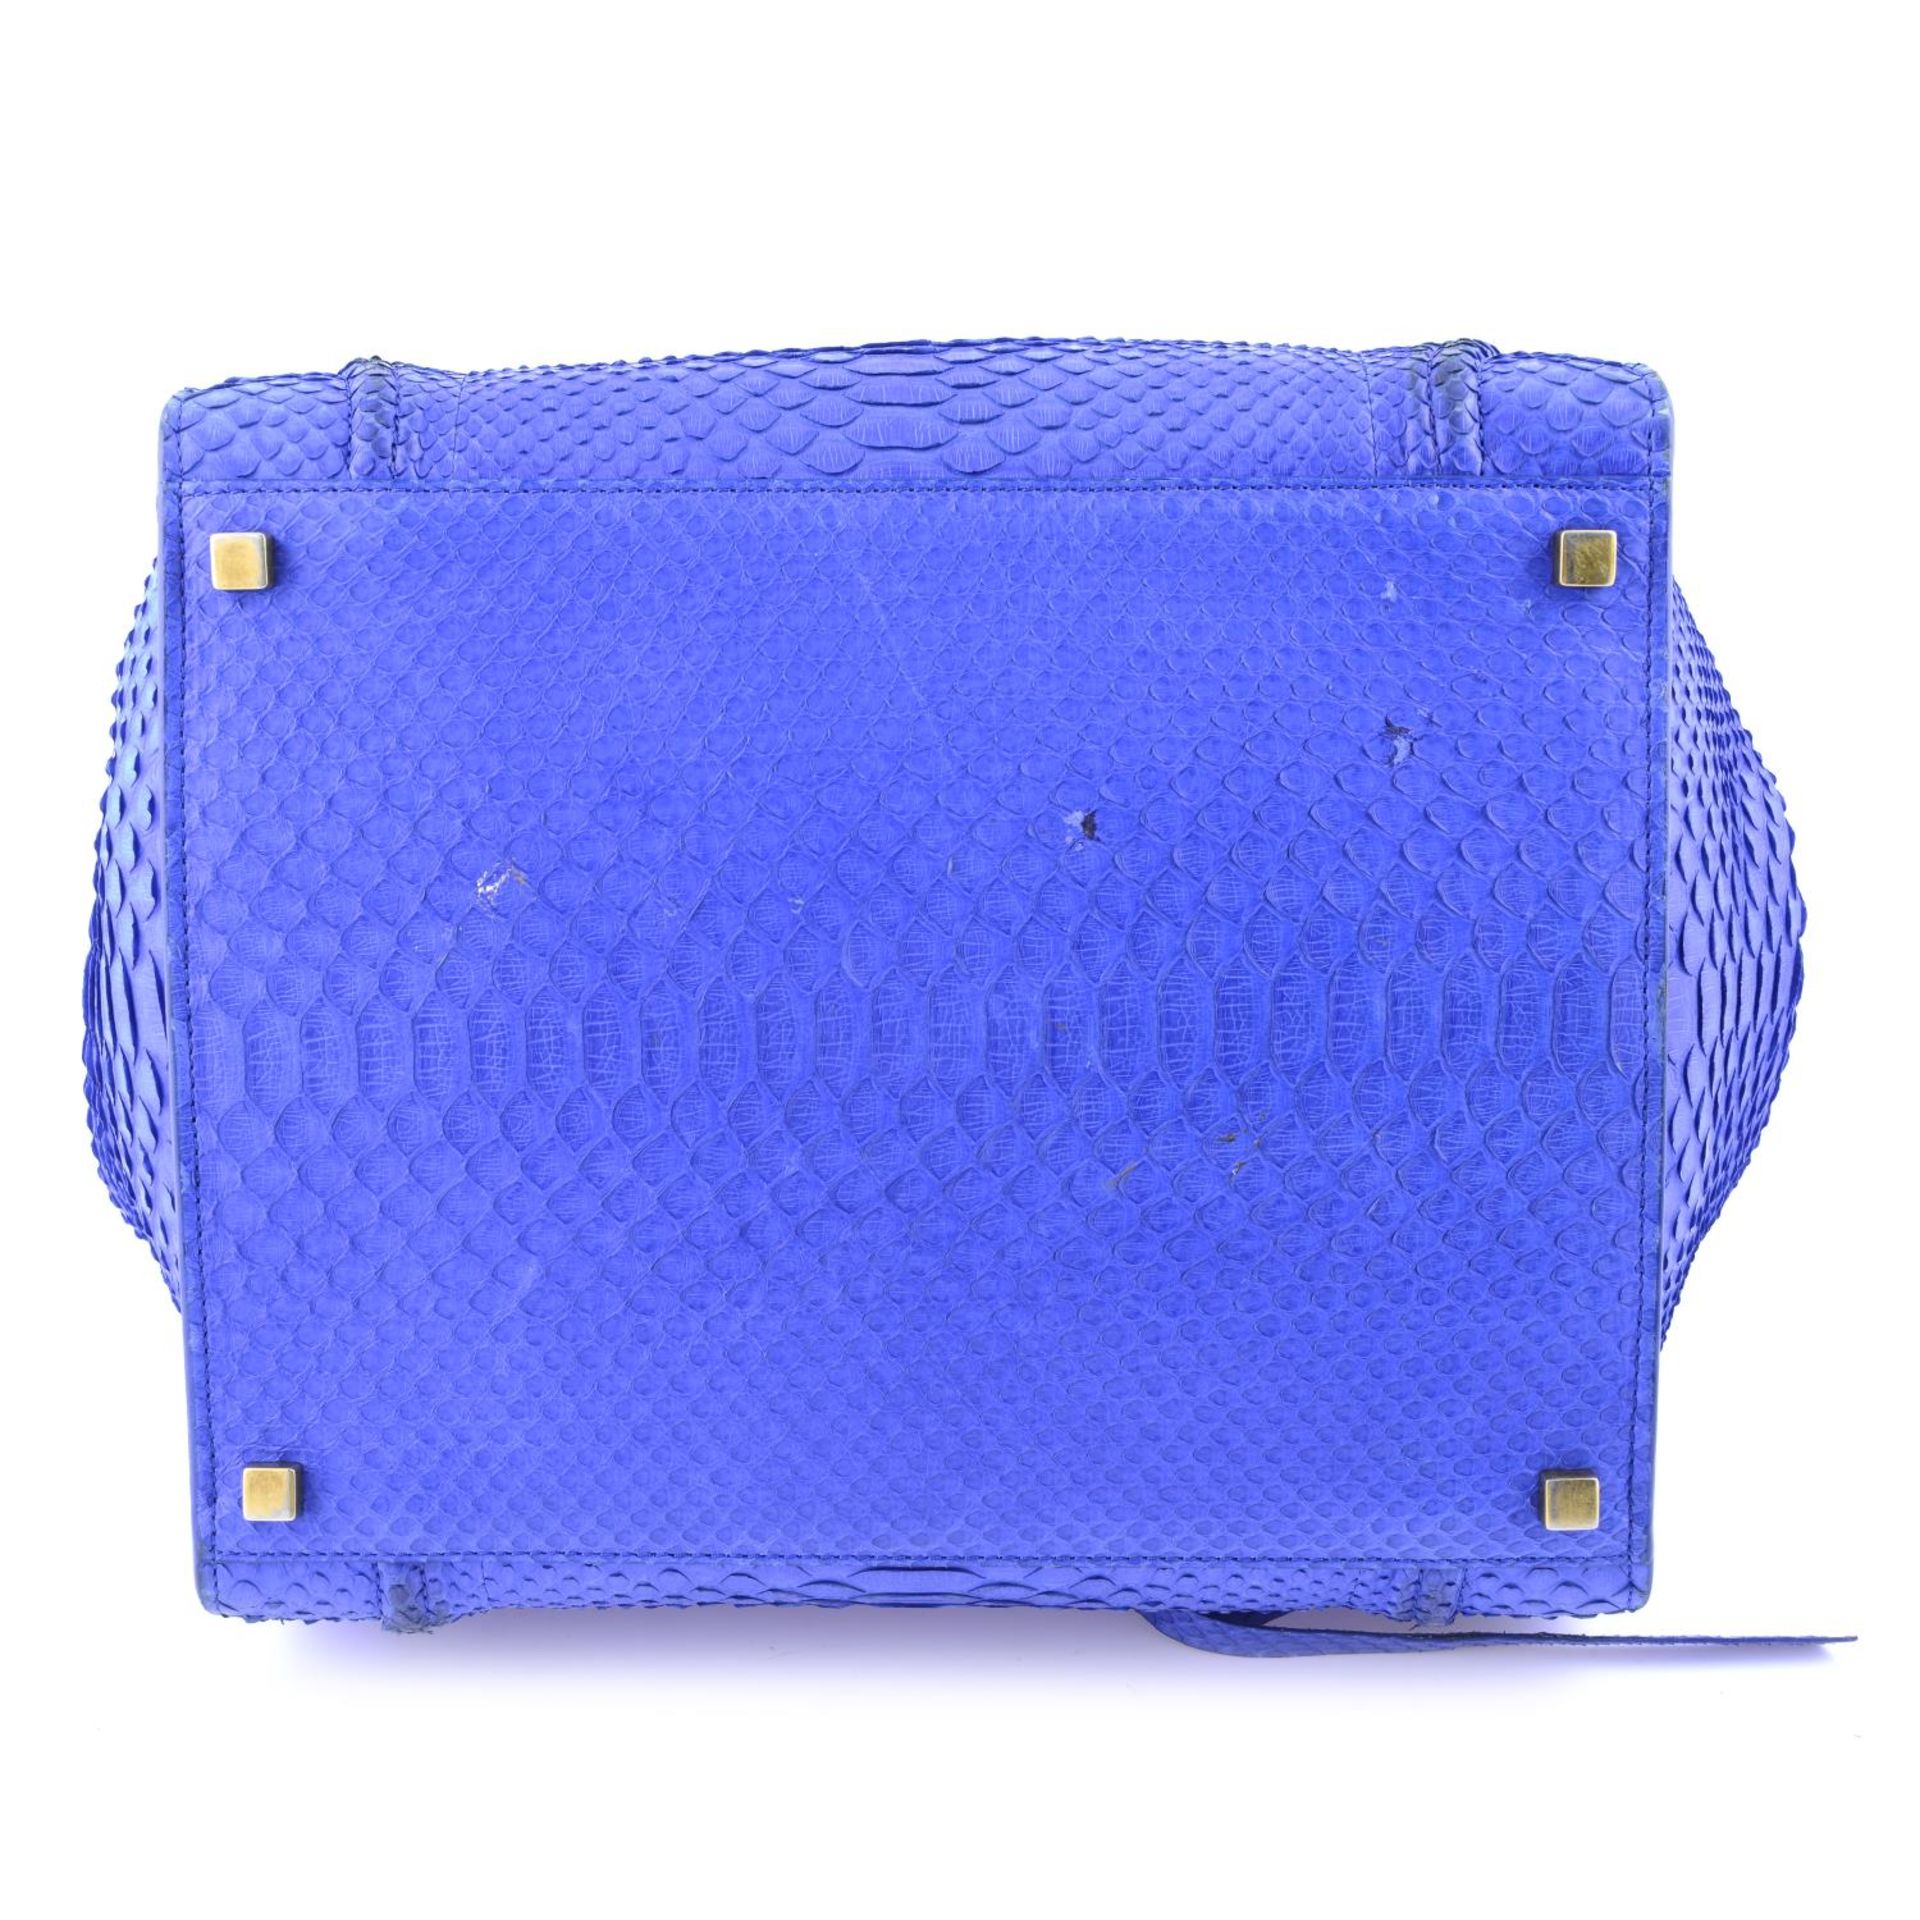 CÉLINE - a blue python skin Phantom handbag. - Image 4 of 9